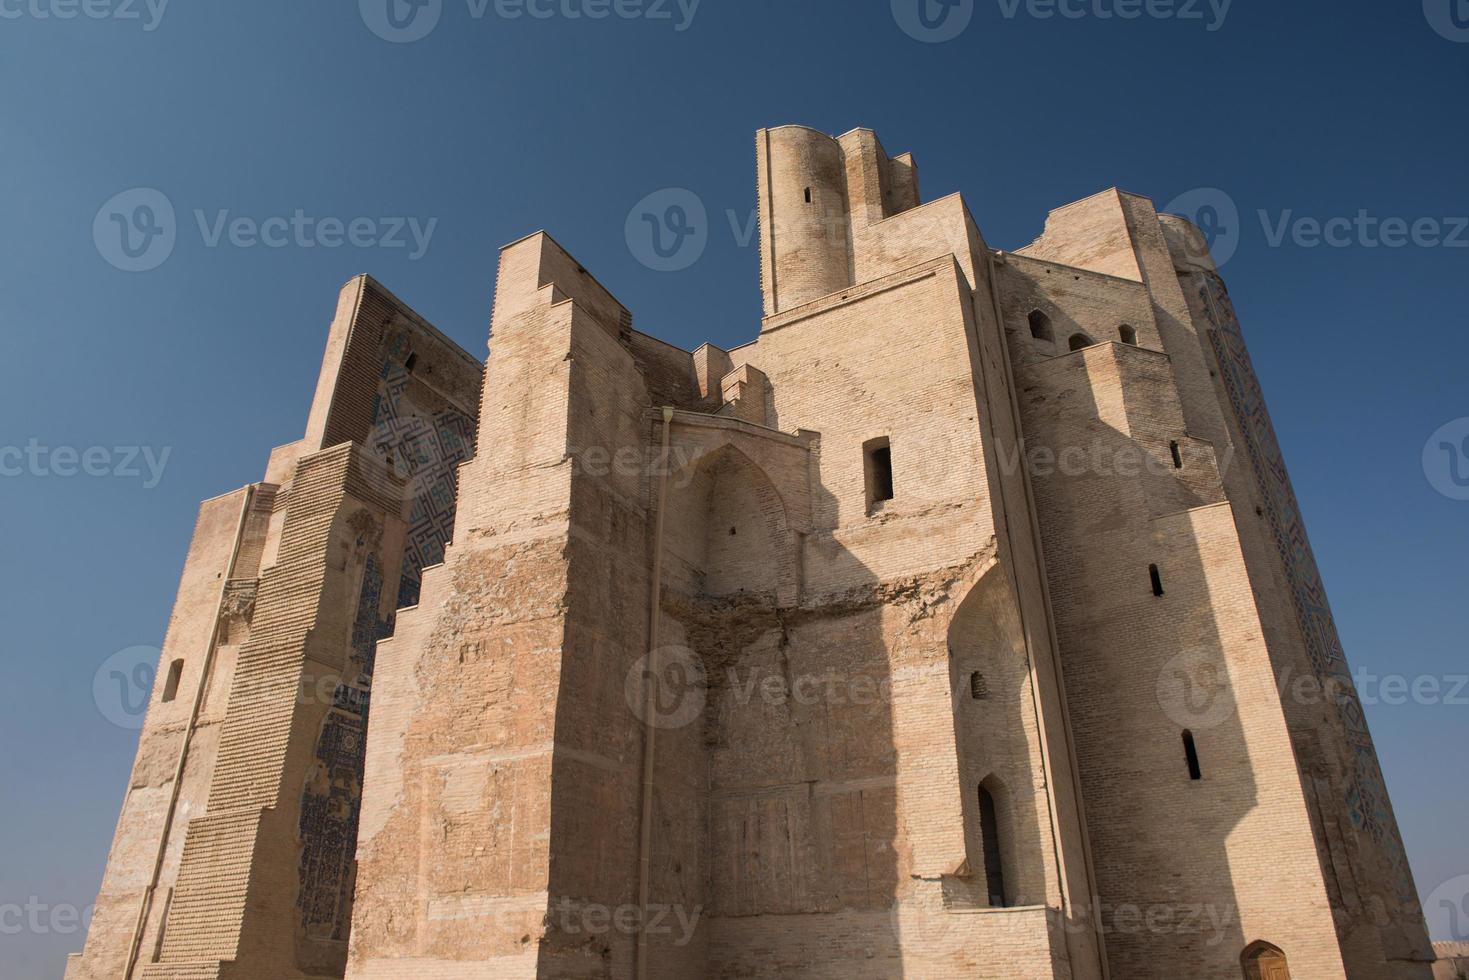 arquitetura da ásia central. grande portal ak-saray - palácio branco de amir timur, uzbequistão, shahrisabz. arquitetura antiga da ásia central foto